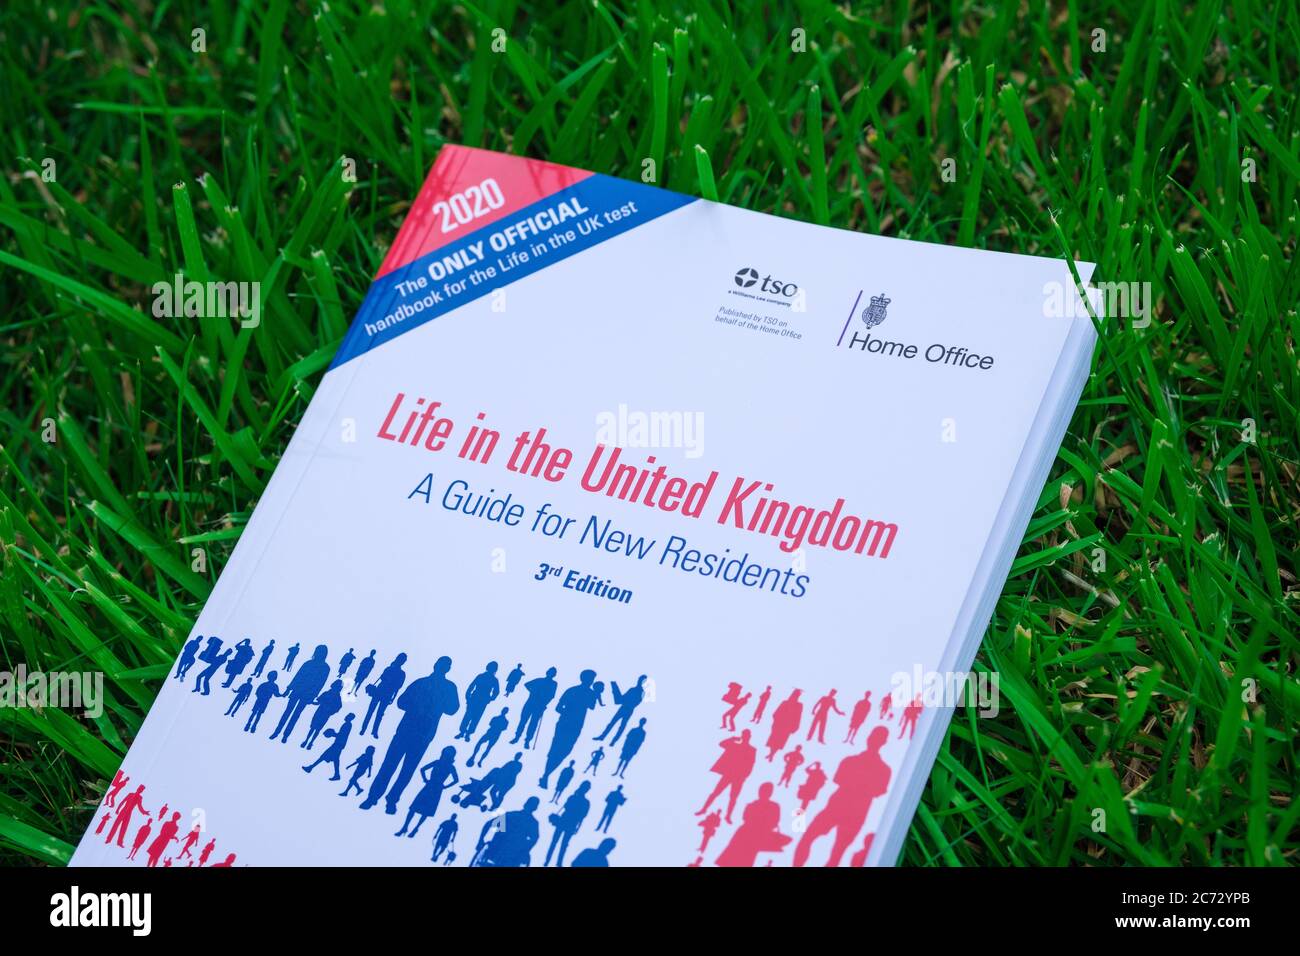 Stone / UK - Luglio 13 2020: 'Life in the United Kingdom' libro pubblicato da Home Office nel 2020 messo sul prato. La guida ufficiale per i nuovi residenti Foto Stock